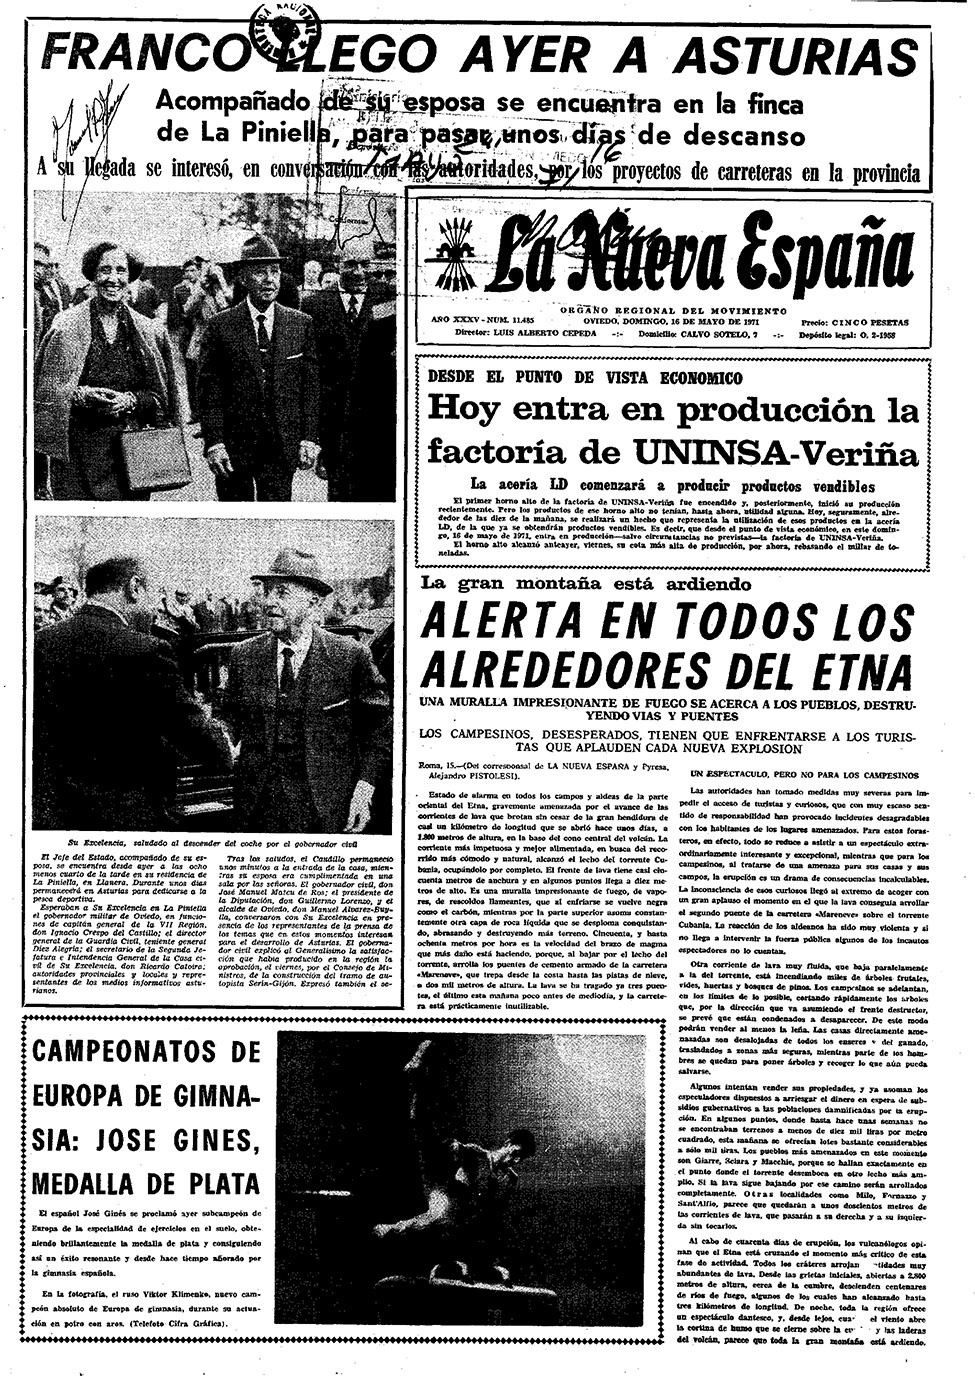 Portada del Domingo, 16 de Mayo de 1971